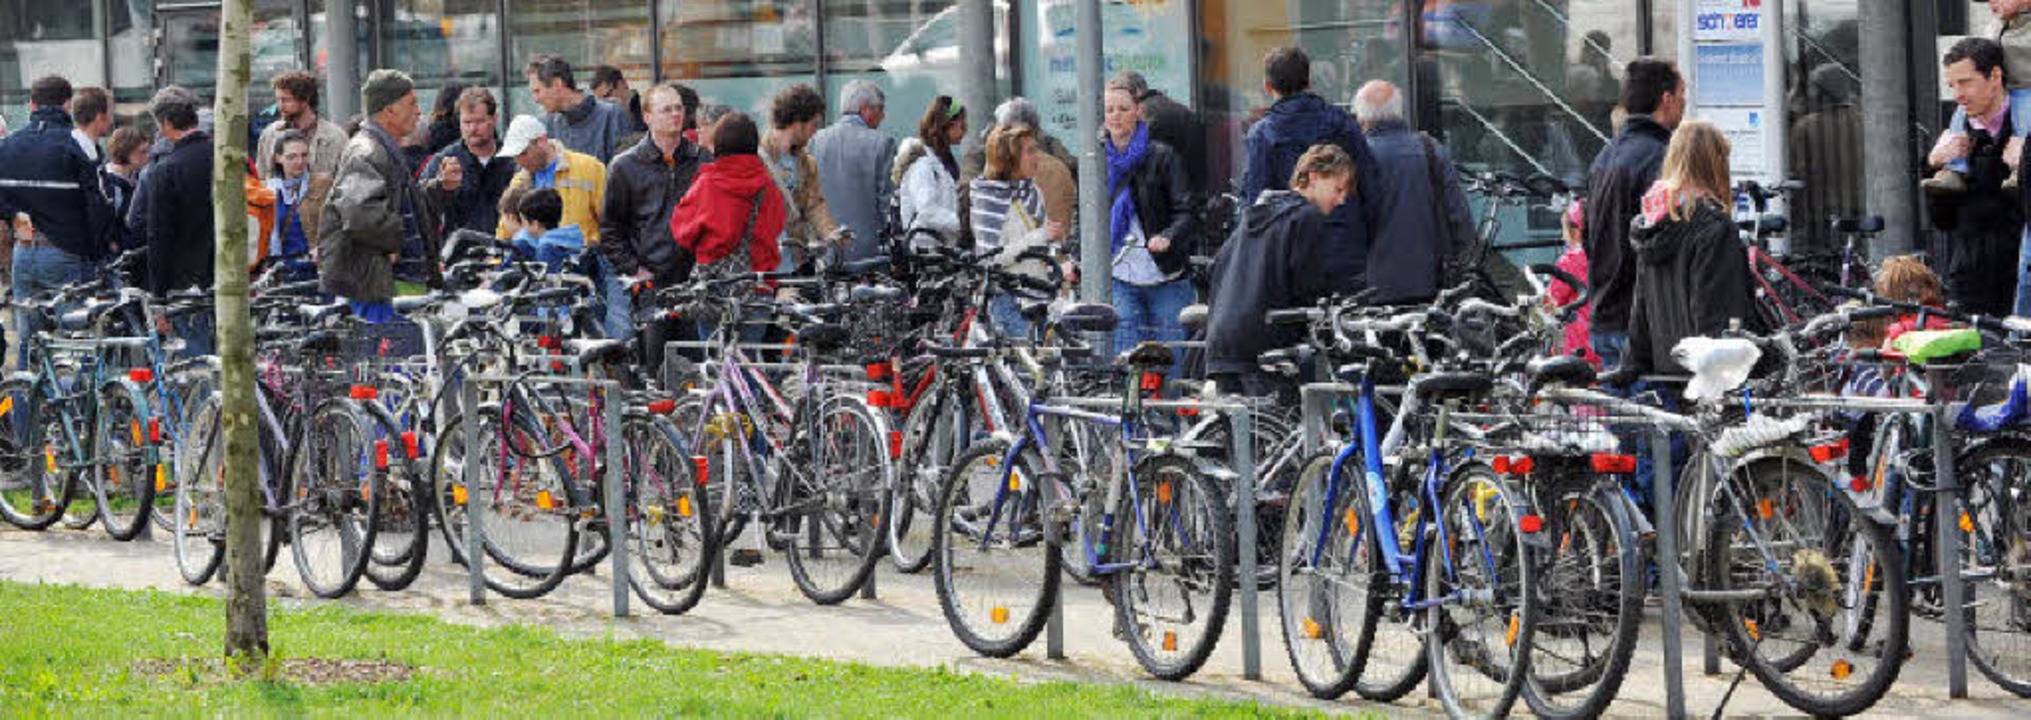 FahrradFrühling bringt viel Volk ins Rollen Freiburg